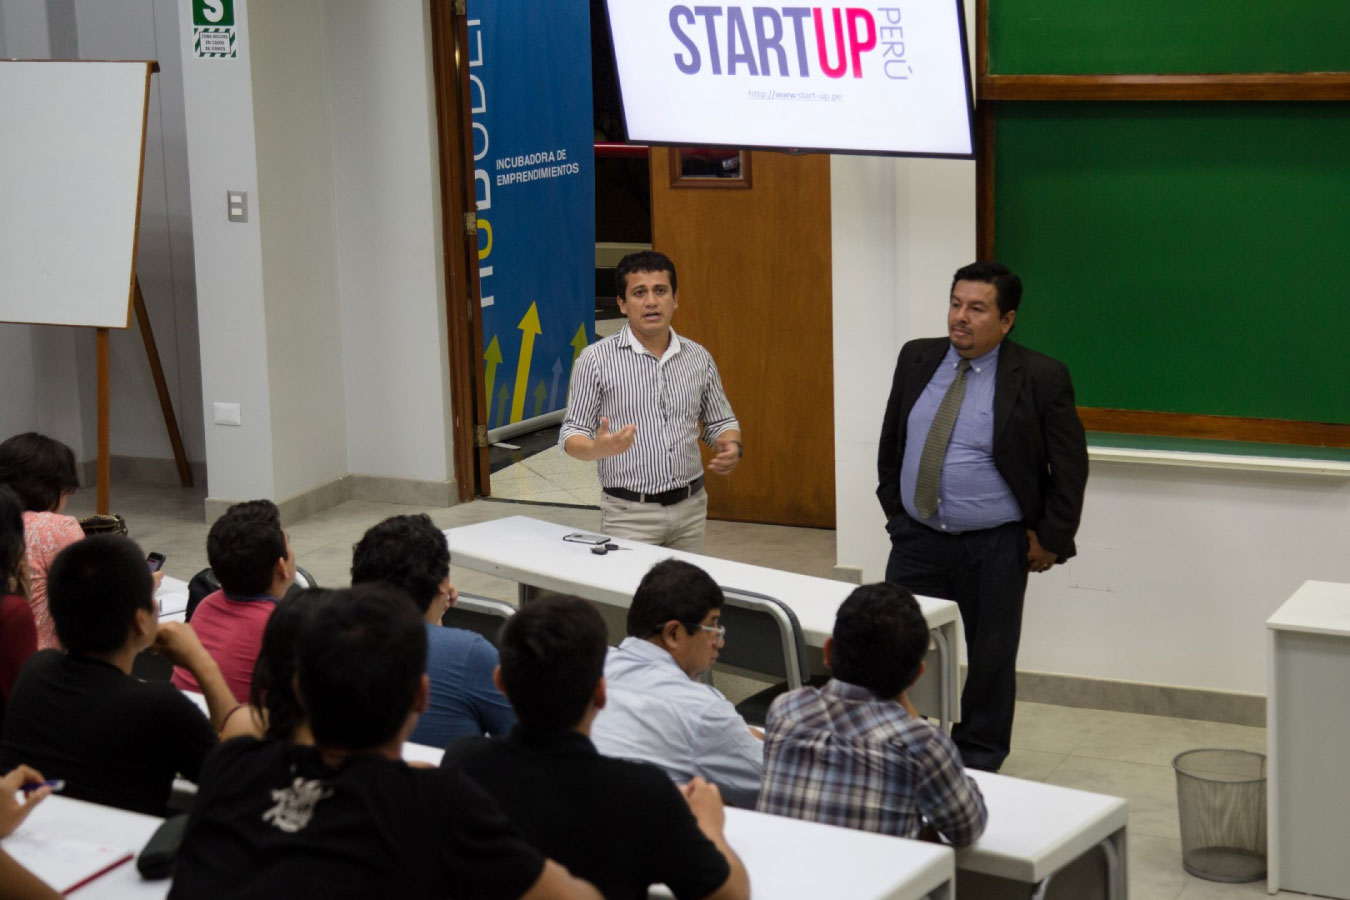 HUB UDEP invita a los emprendedores a participar en StartUp Perú